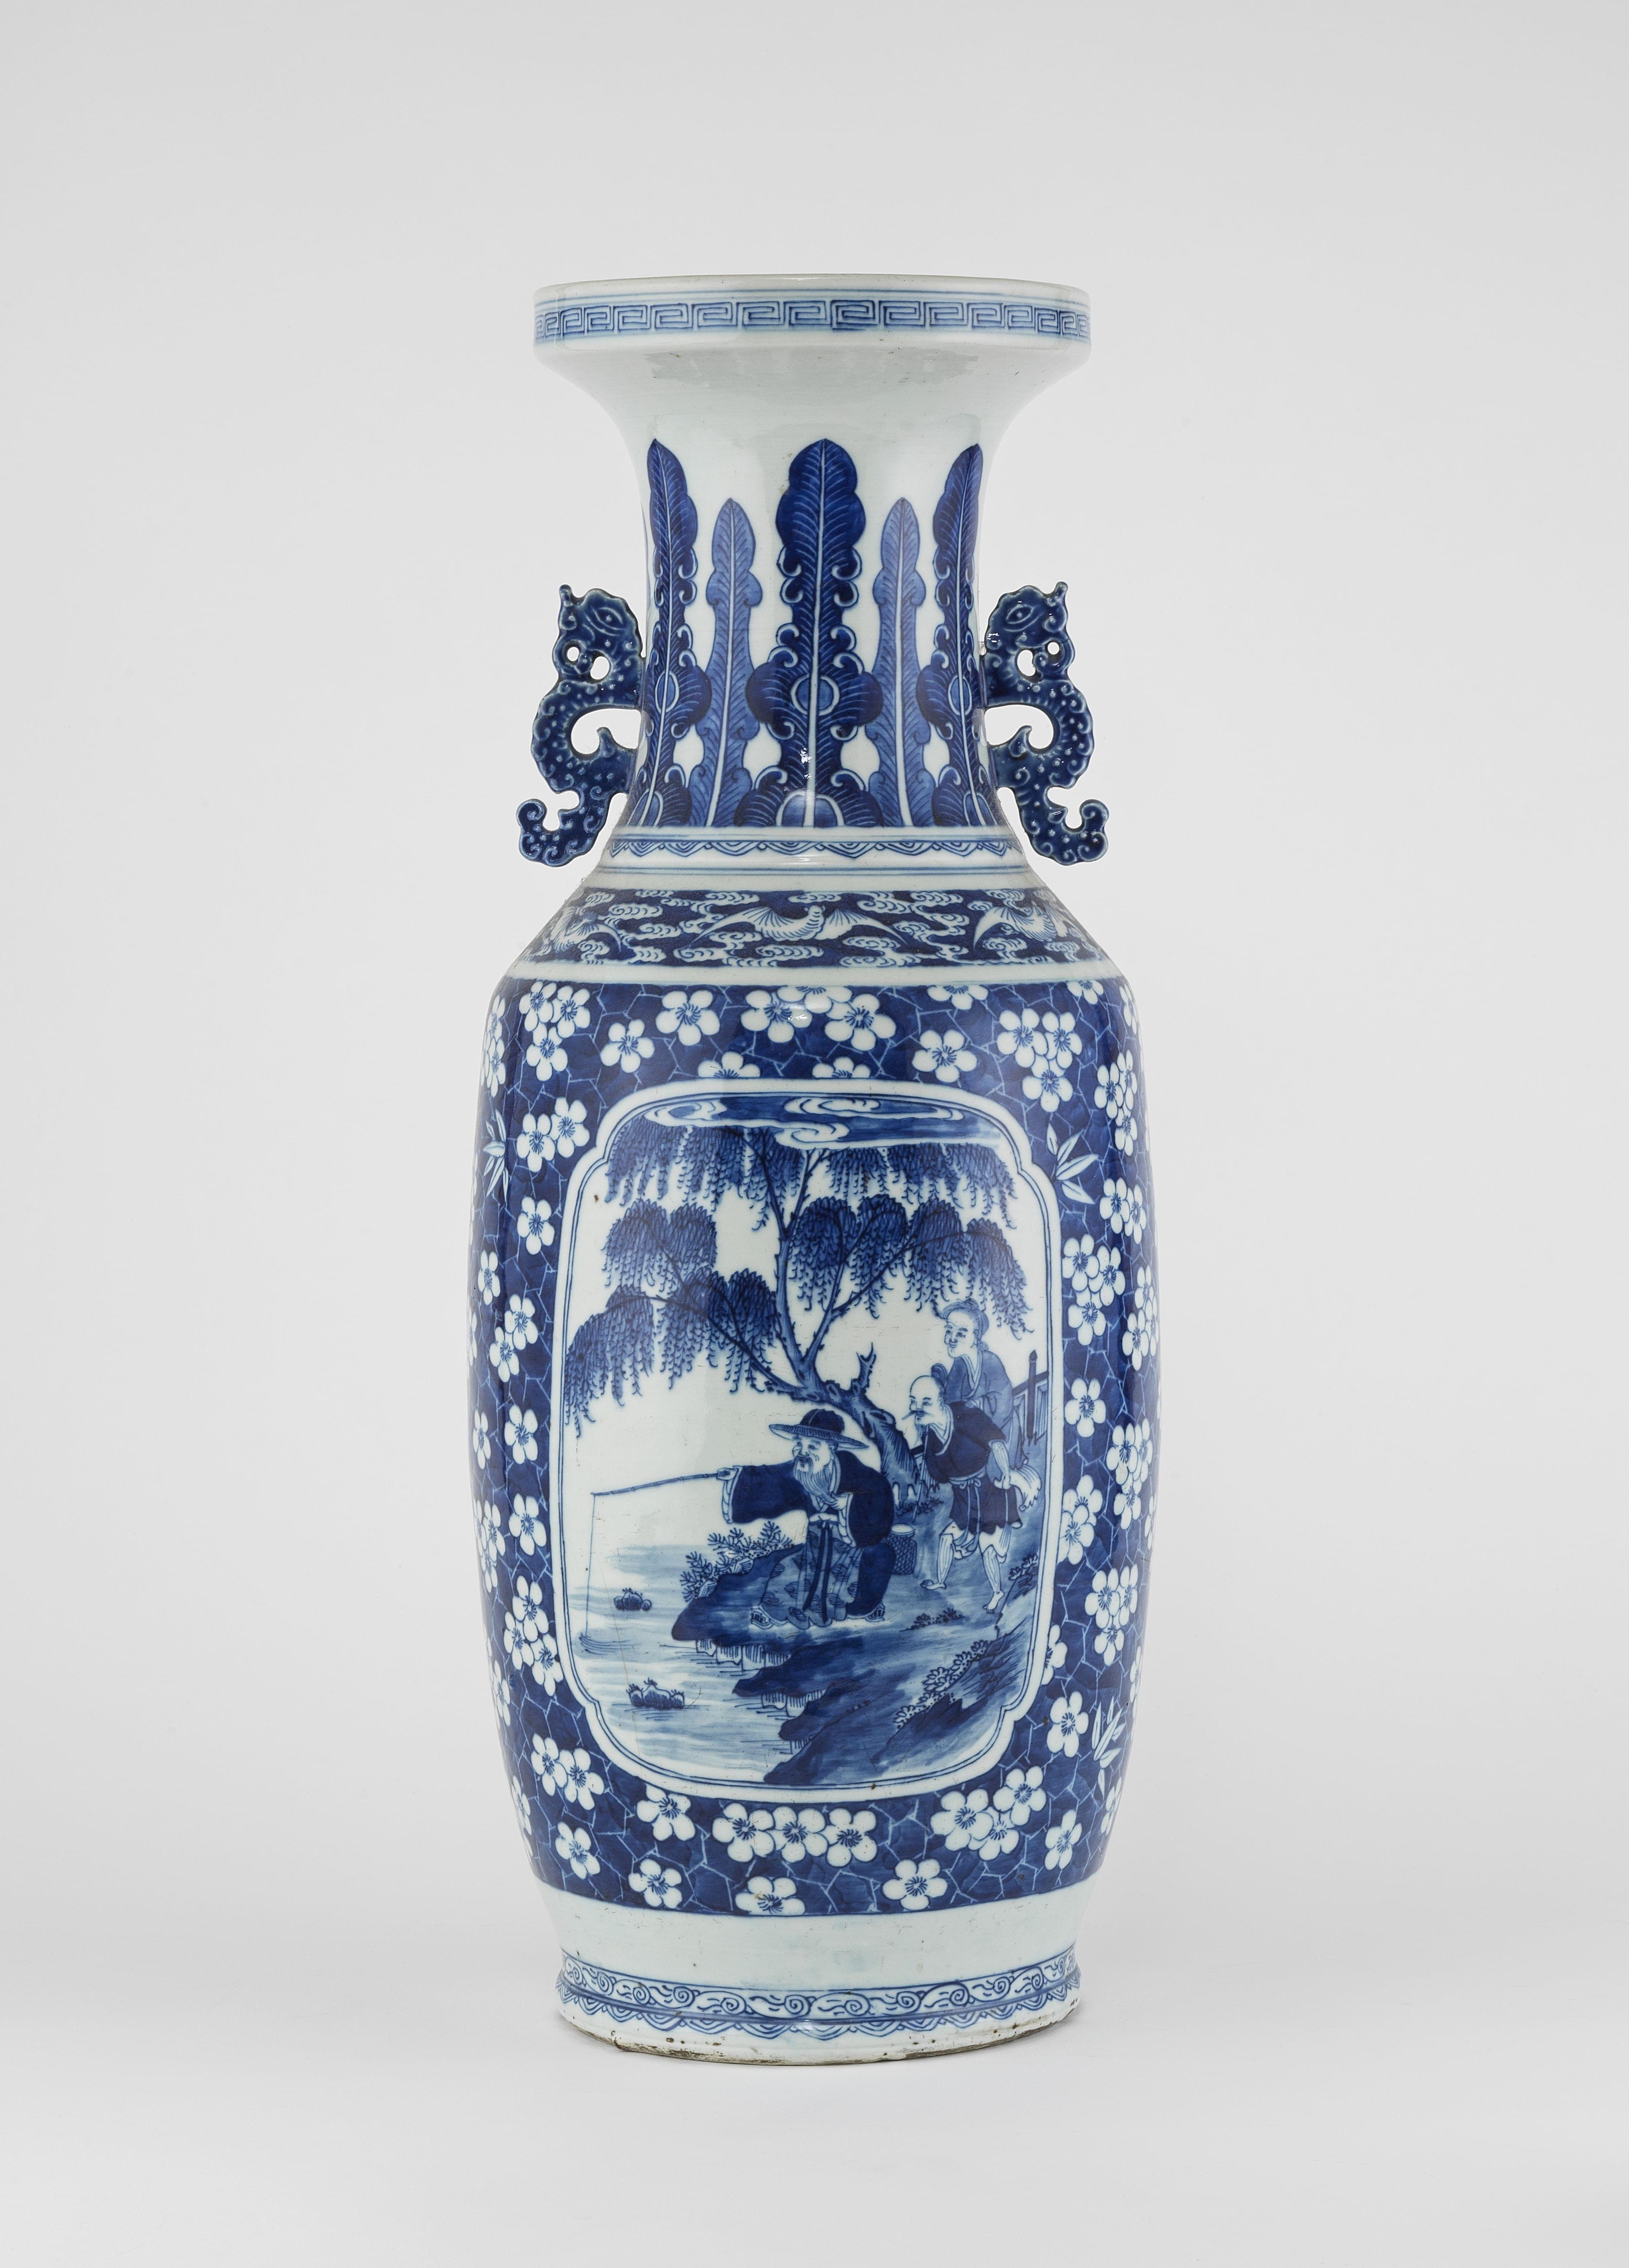 Grand vase, Chine, époque Daoguang (1821-1850)